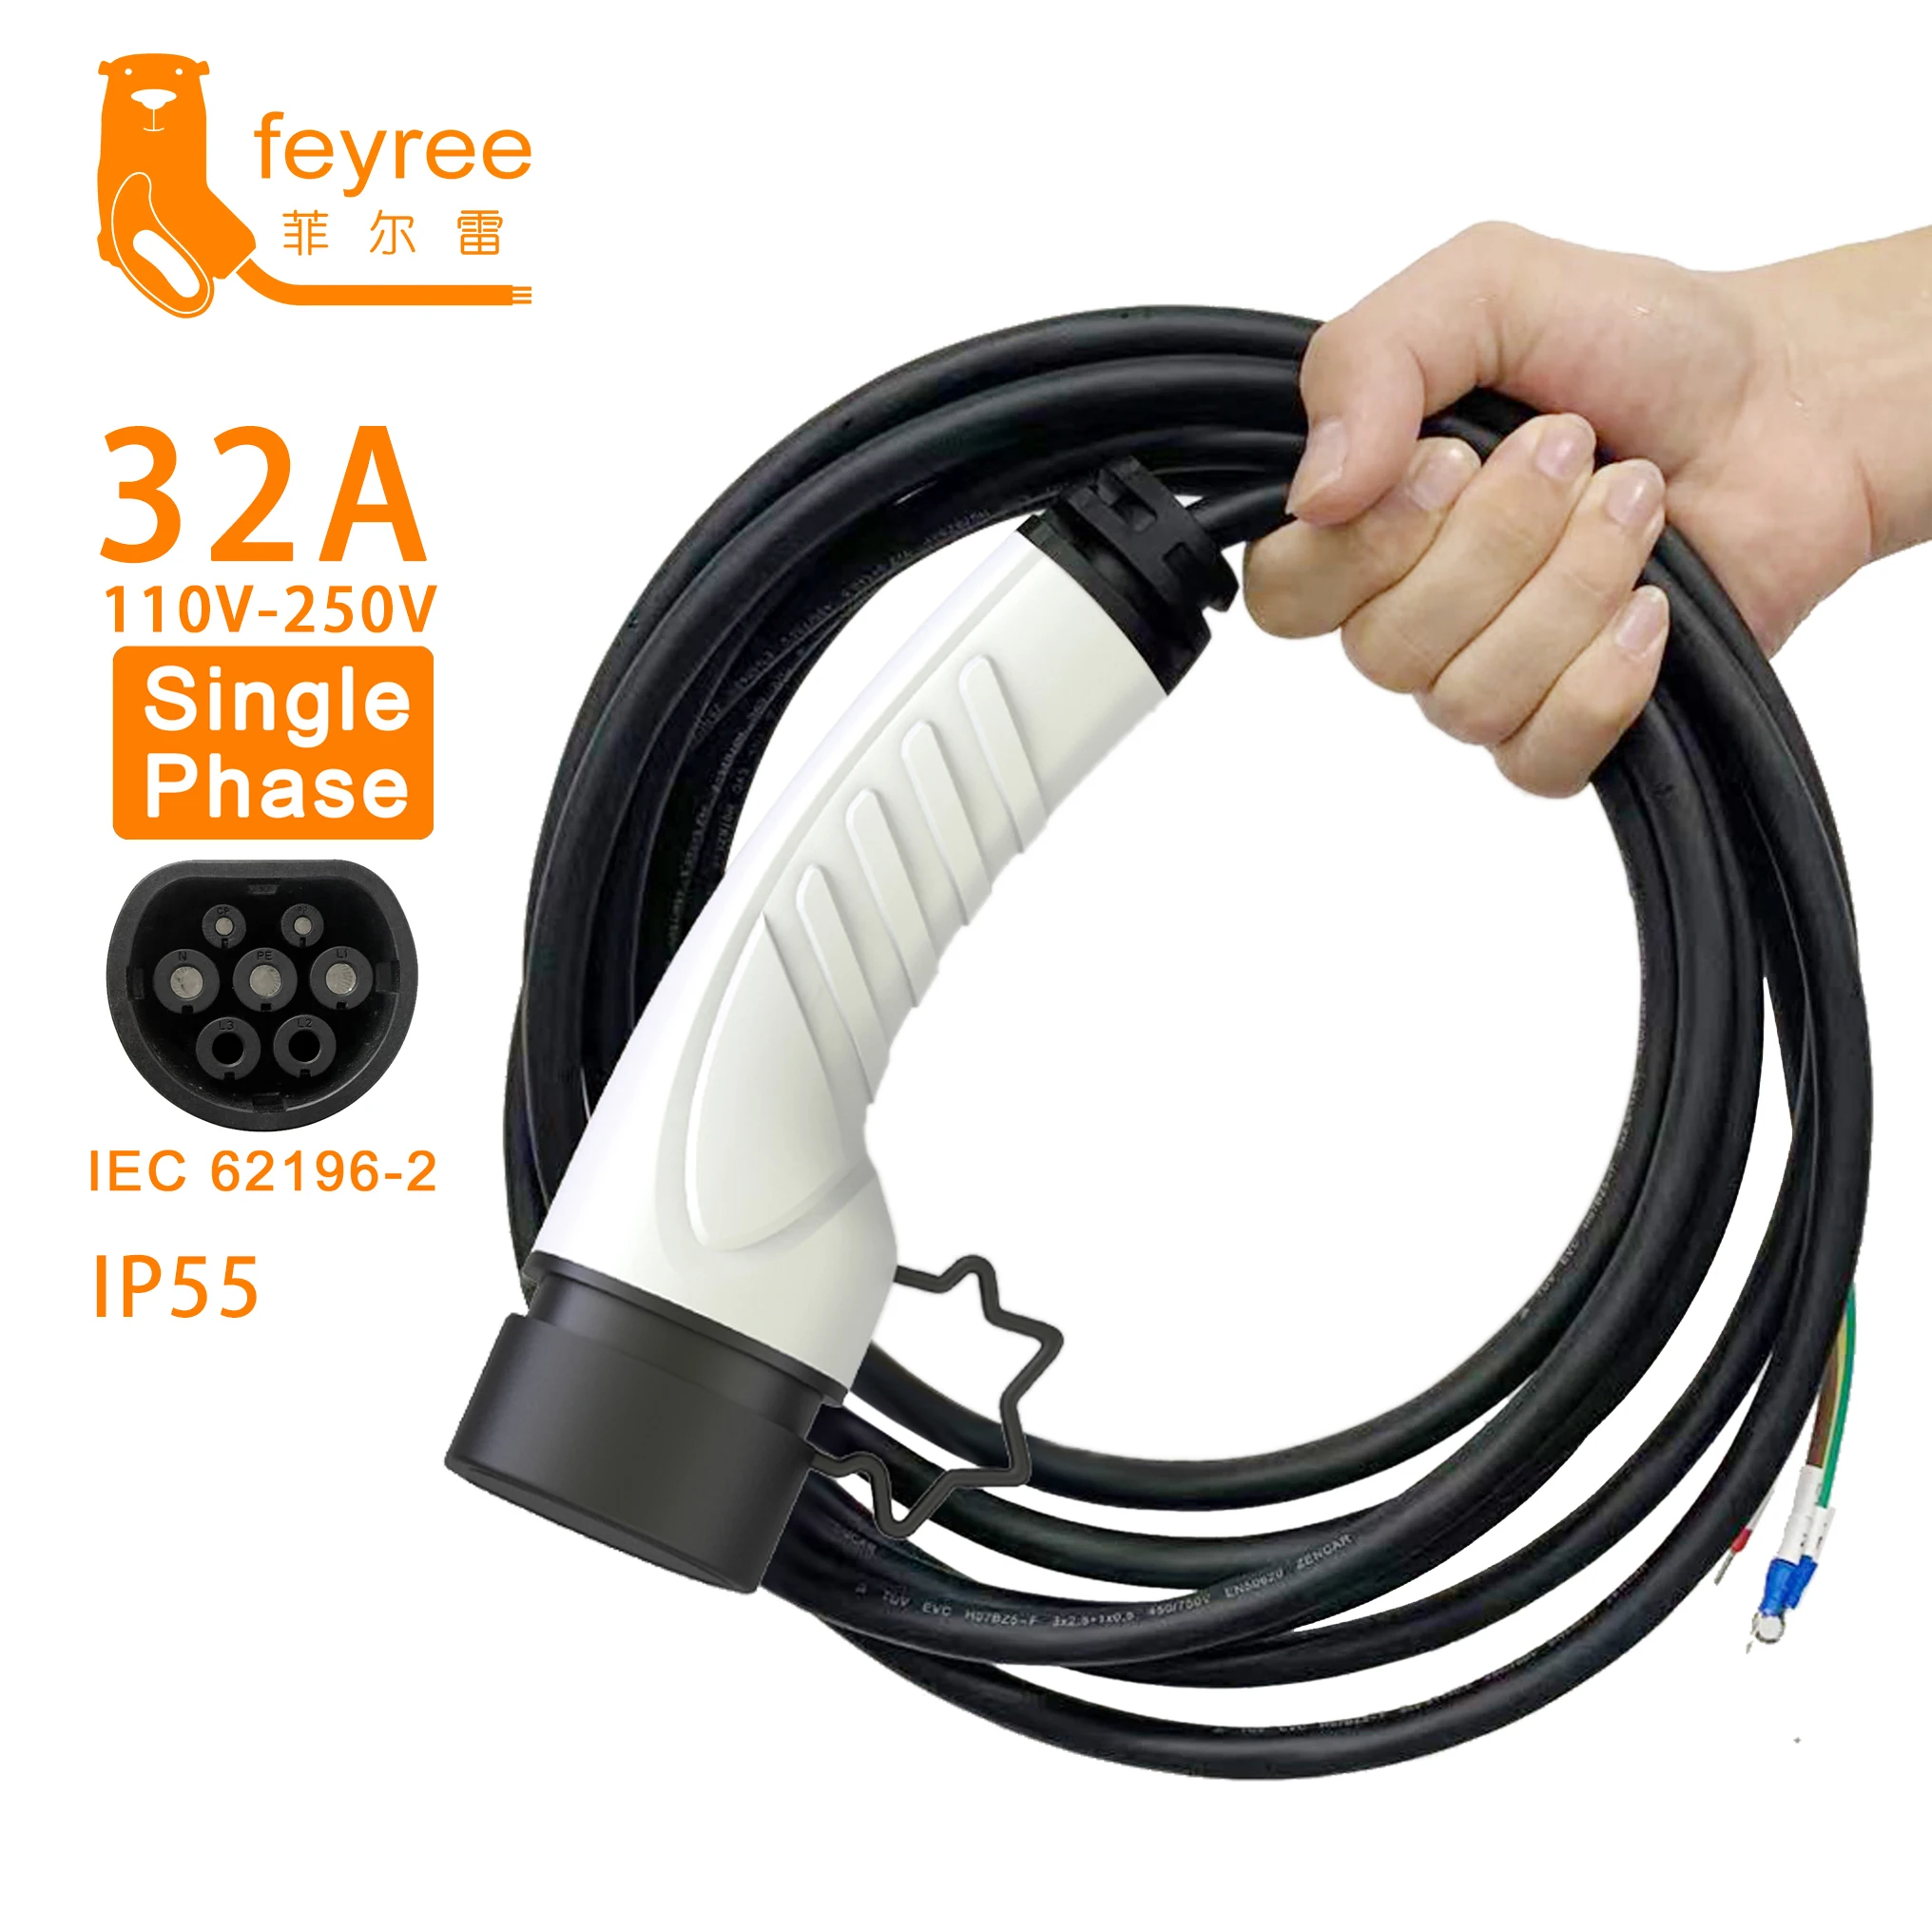 Feyree-enchufe para cargador EV de 32A y 8KW, Cable tipo 2 16A, estación de carga de 1 fase para coche, Cable de IEC62196-2 trifásico de 11KW y 22KW para vehículo eléctrico